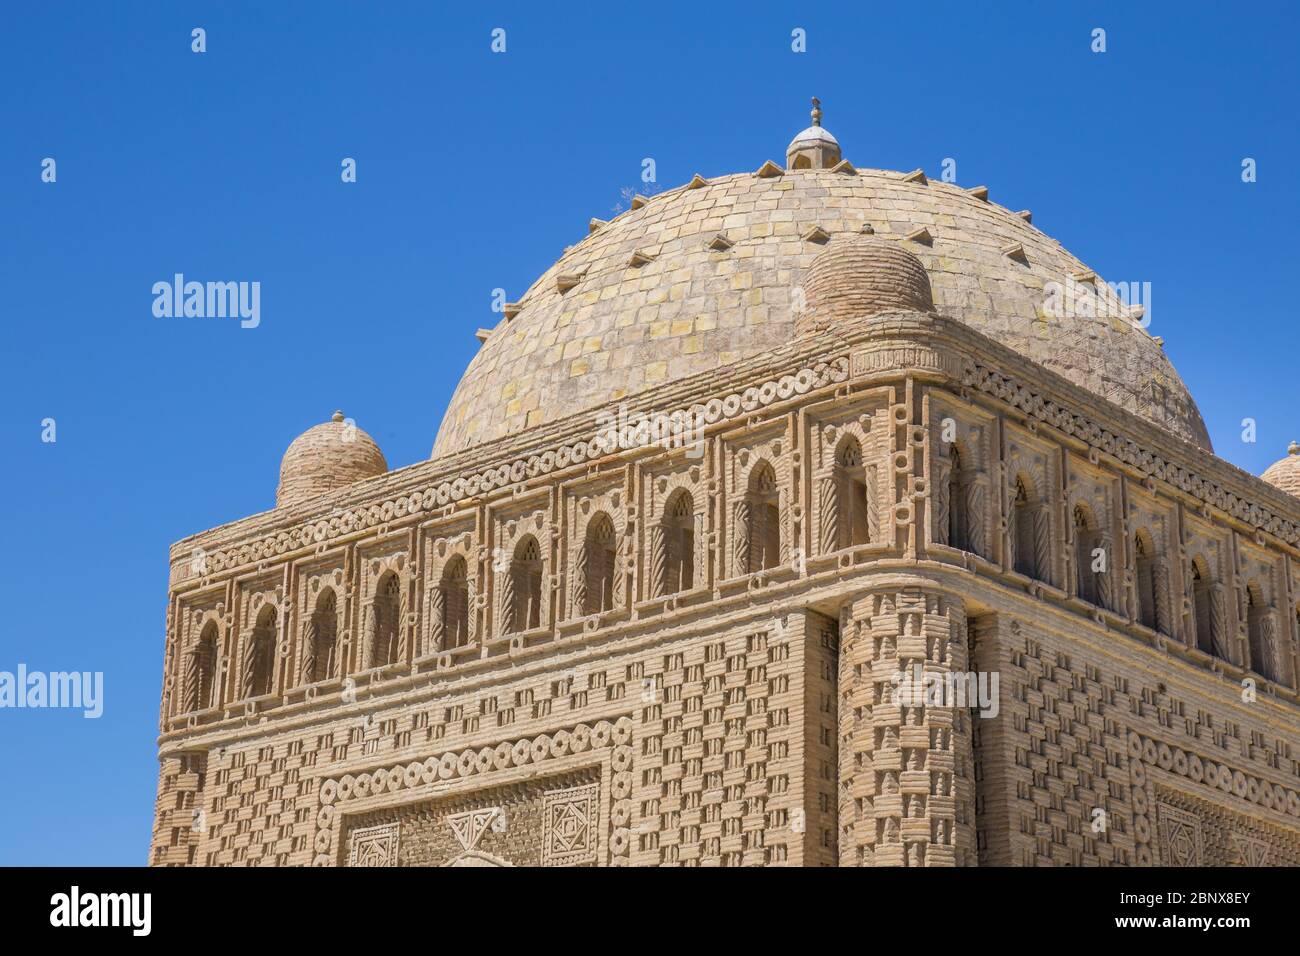 Ismail Samani Mausoleum, das älteste muslimische Denkmal der Stadt und wahrscheinlich das robusteste architektonisch, in Buchara, Usbekistan. Stockfoto